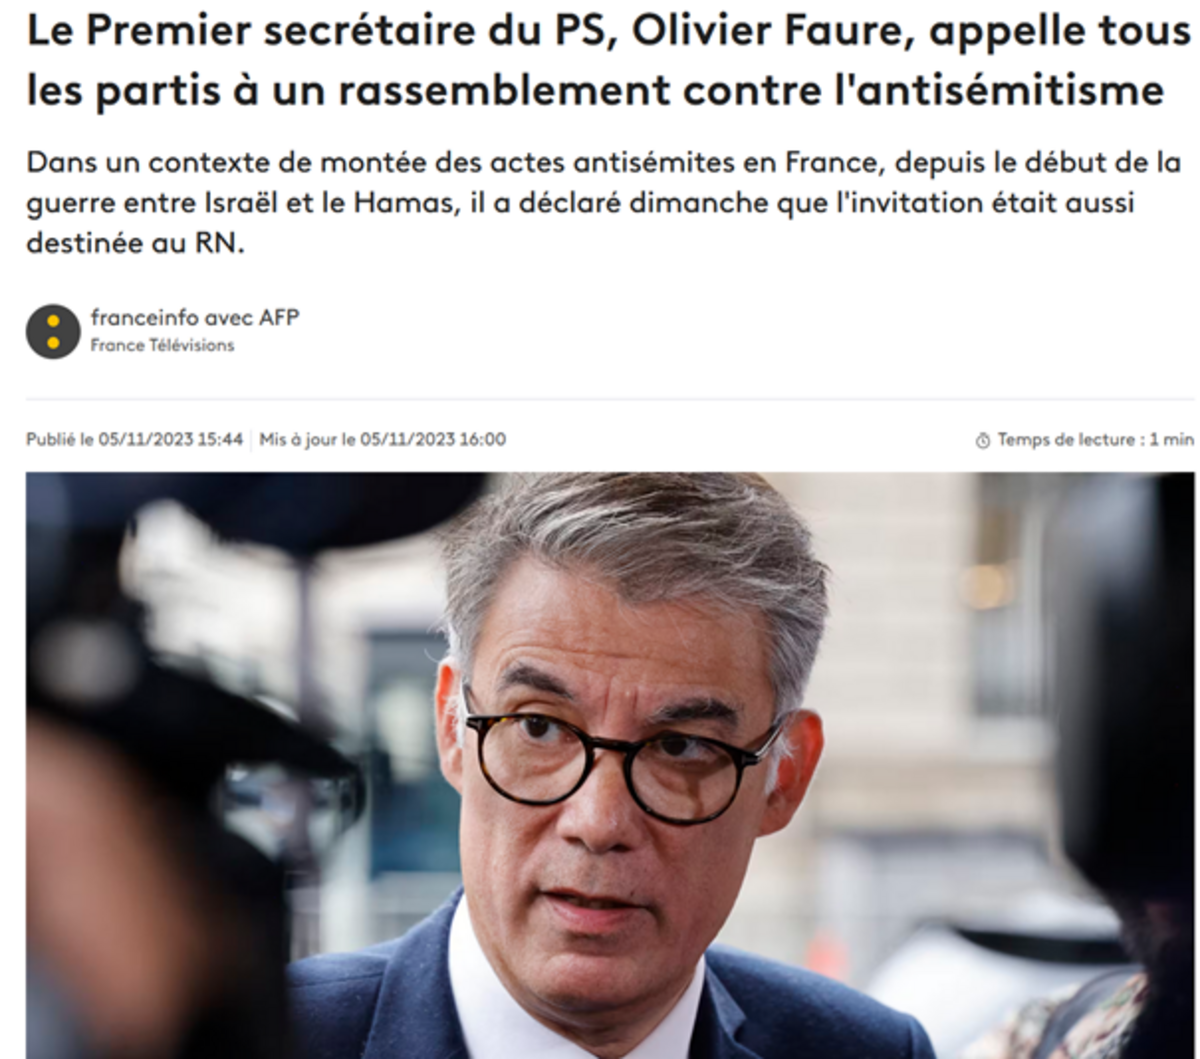 L'appel d'Olivier Faure du PS à une manif contre l'antisémitisme ne fait pas l'unanimité ! Ps-faure-antisemitisme-rn